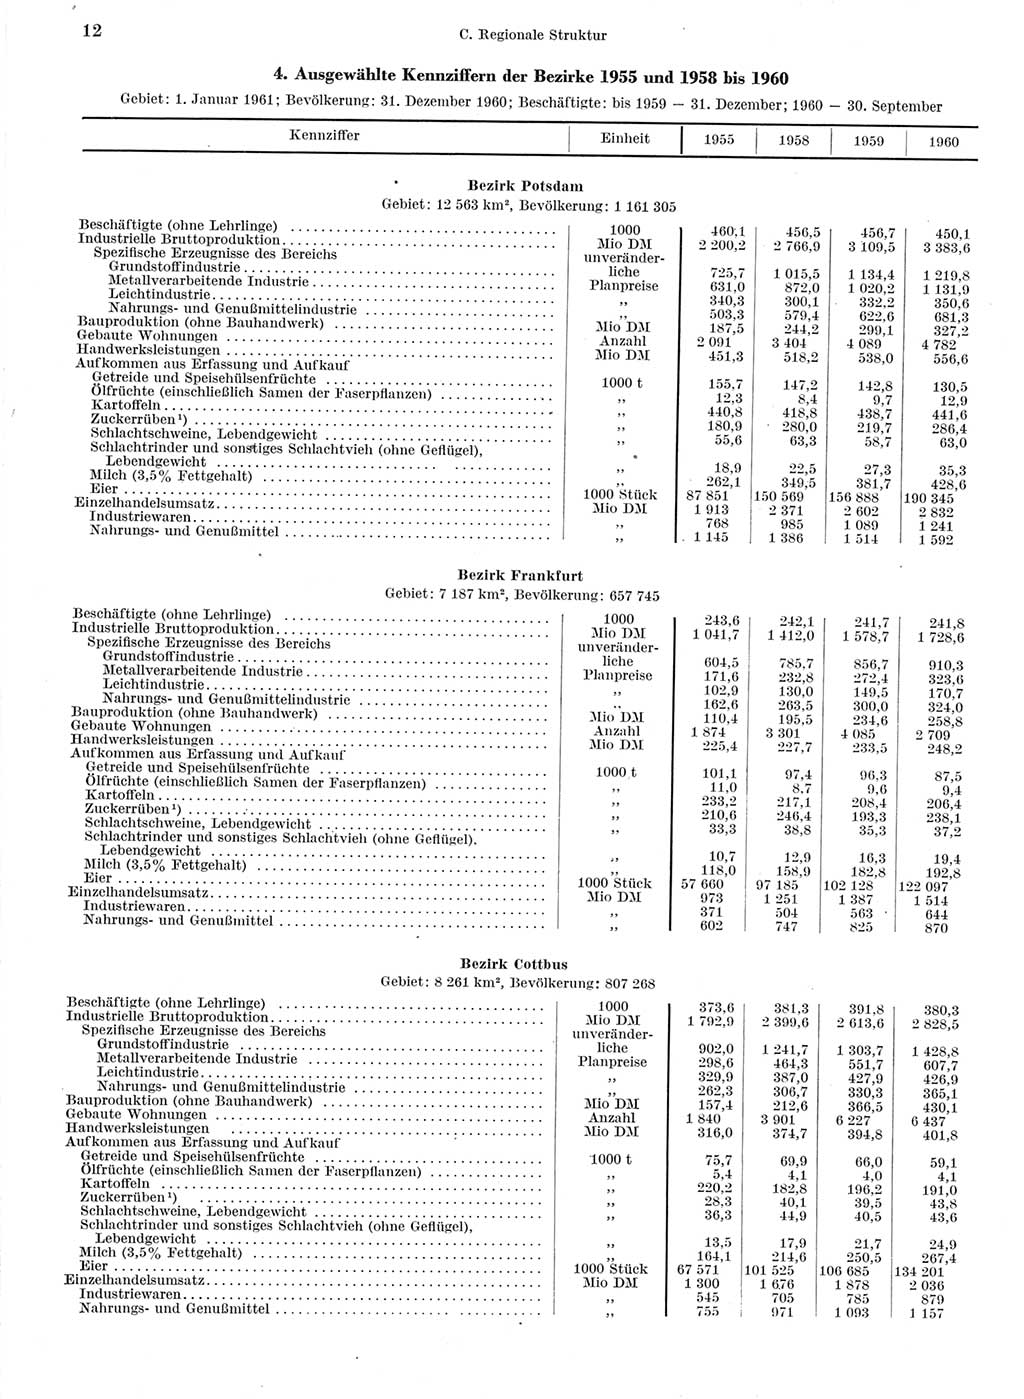 Statistisches Jahrbuch der Deutschen Demokratischen Republik (DDR) 1960-1961, Seite 12 (Stat. Jb. DDR 1960-1961, S. 12)